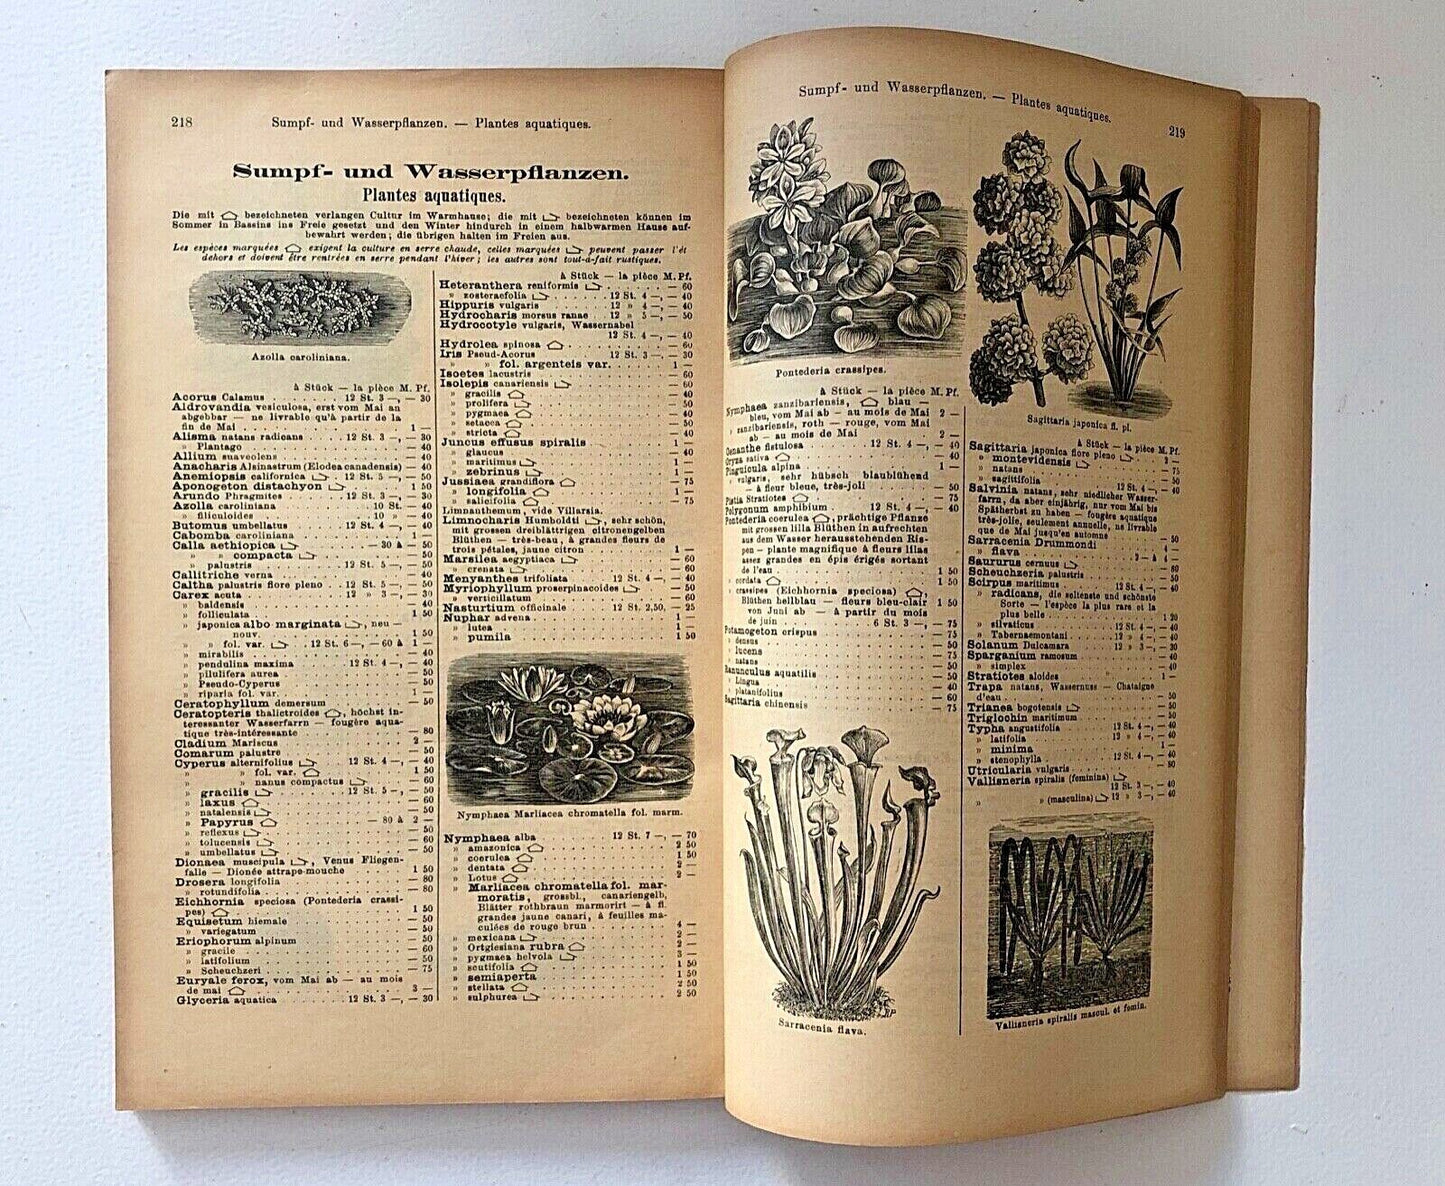 Haage & Schmidt 1896 Haupt-Verzeichniss Samen und Pflanzen